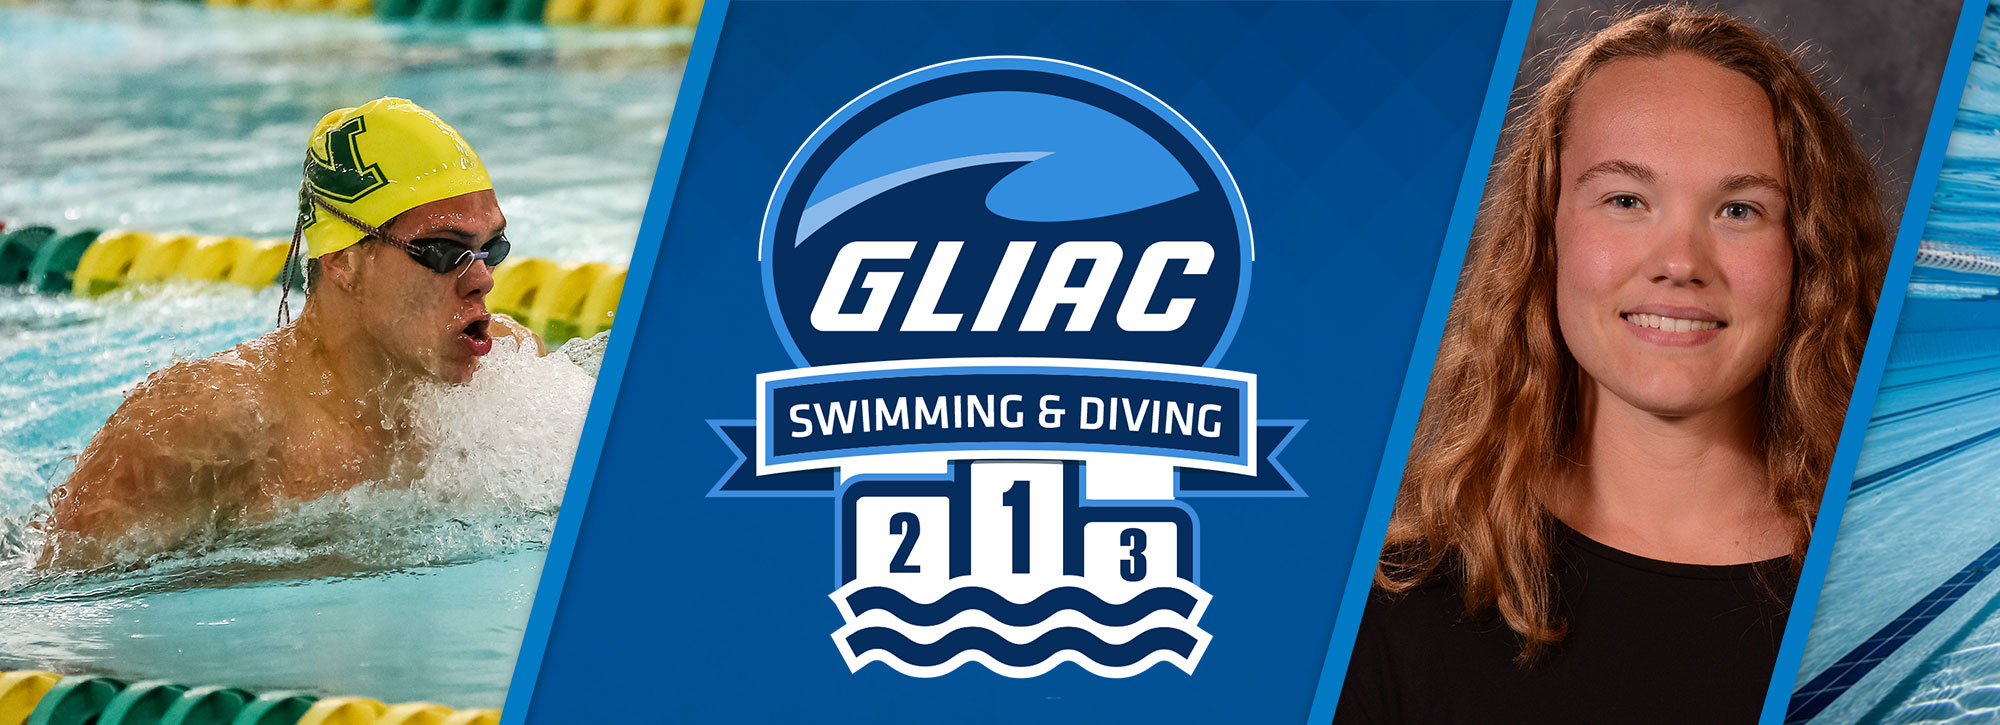 Wayne State's Davenport, Northern Michigan's Herrera Named GLIAC Swimming Athletes of the Week